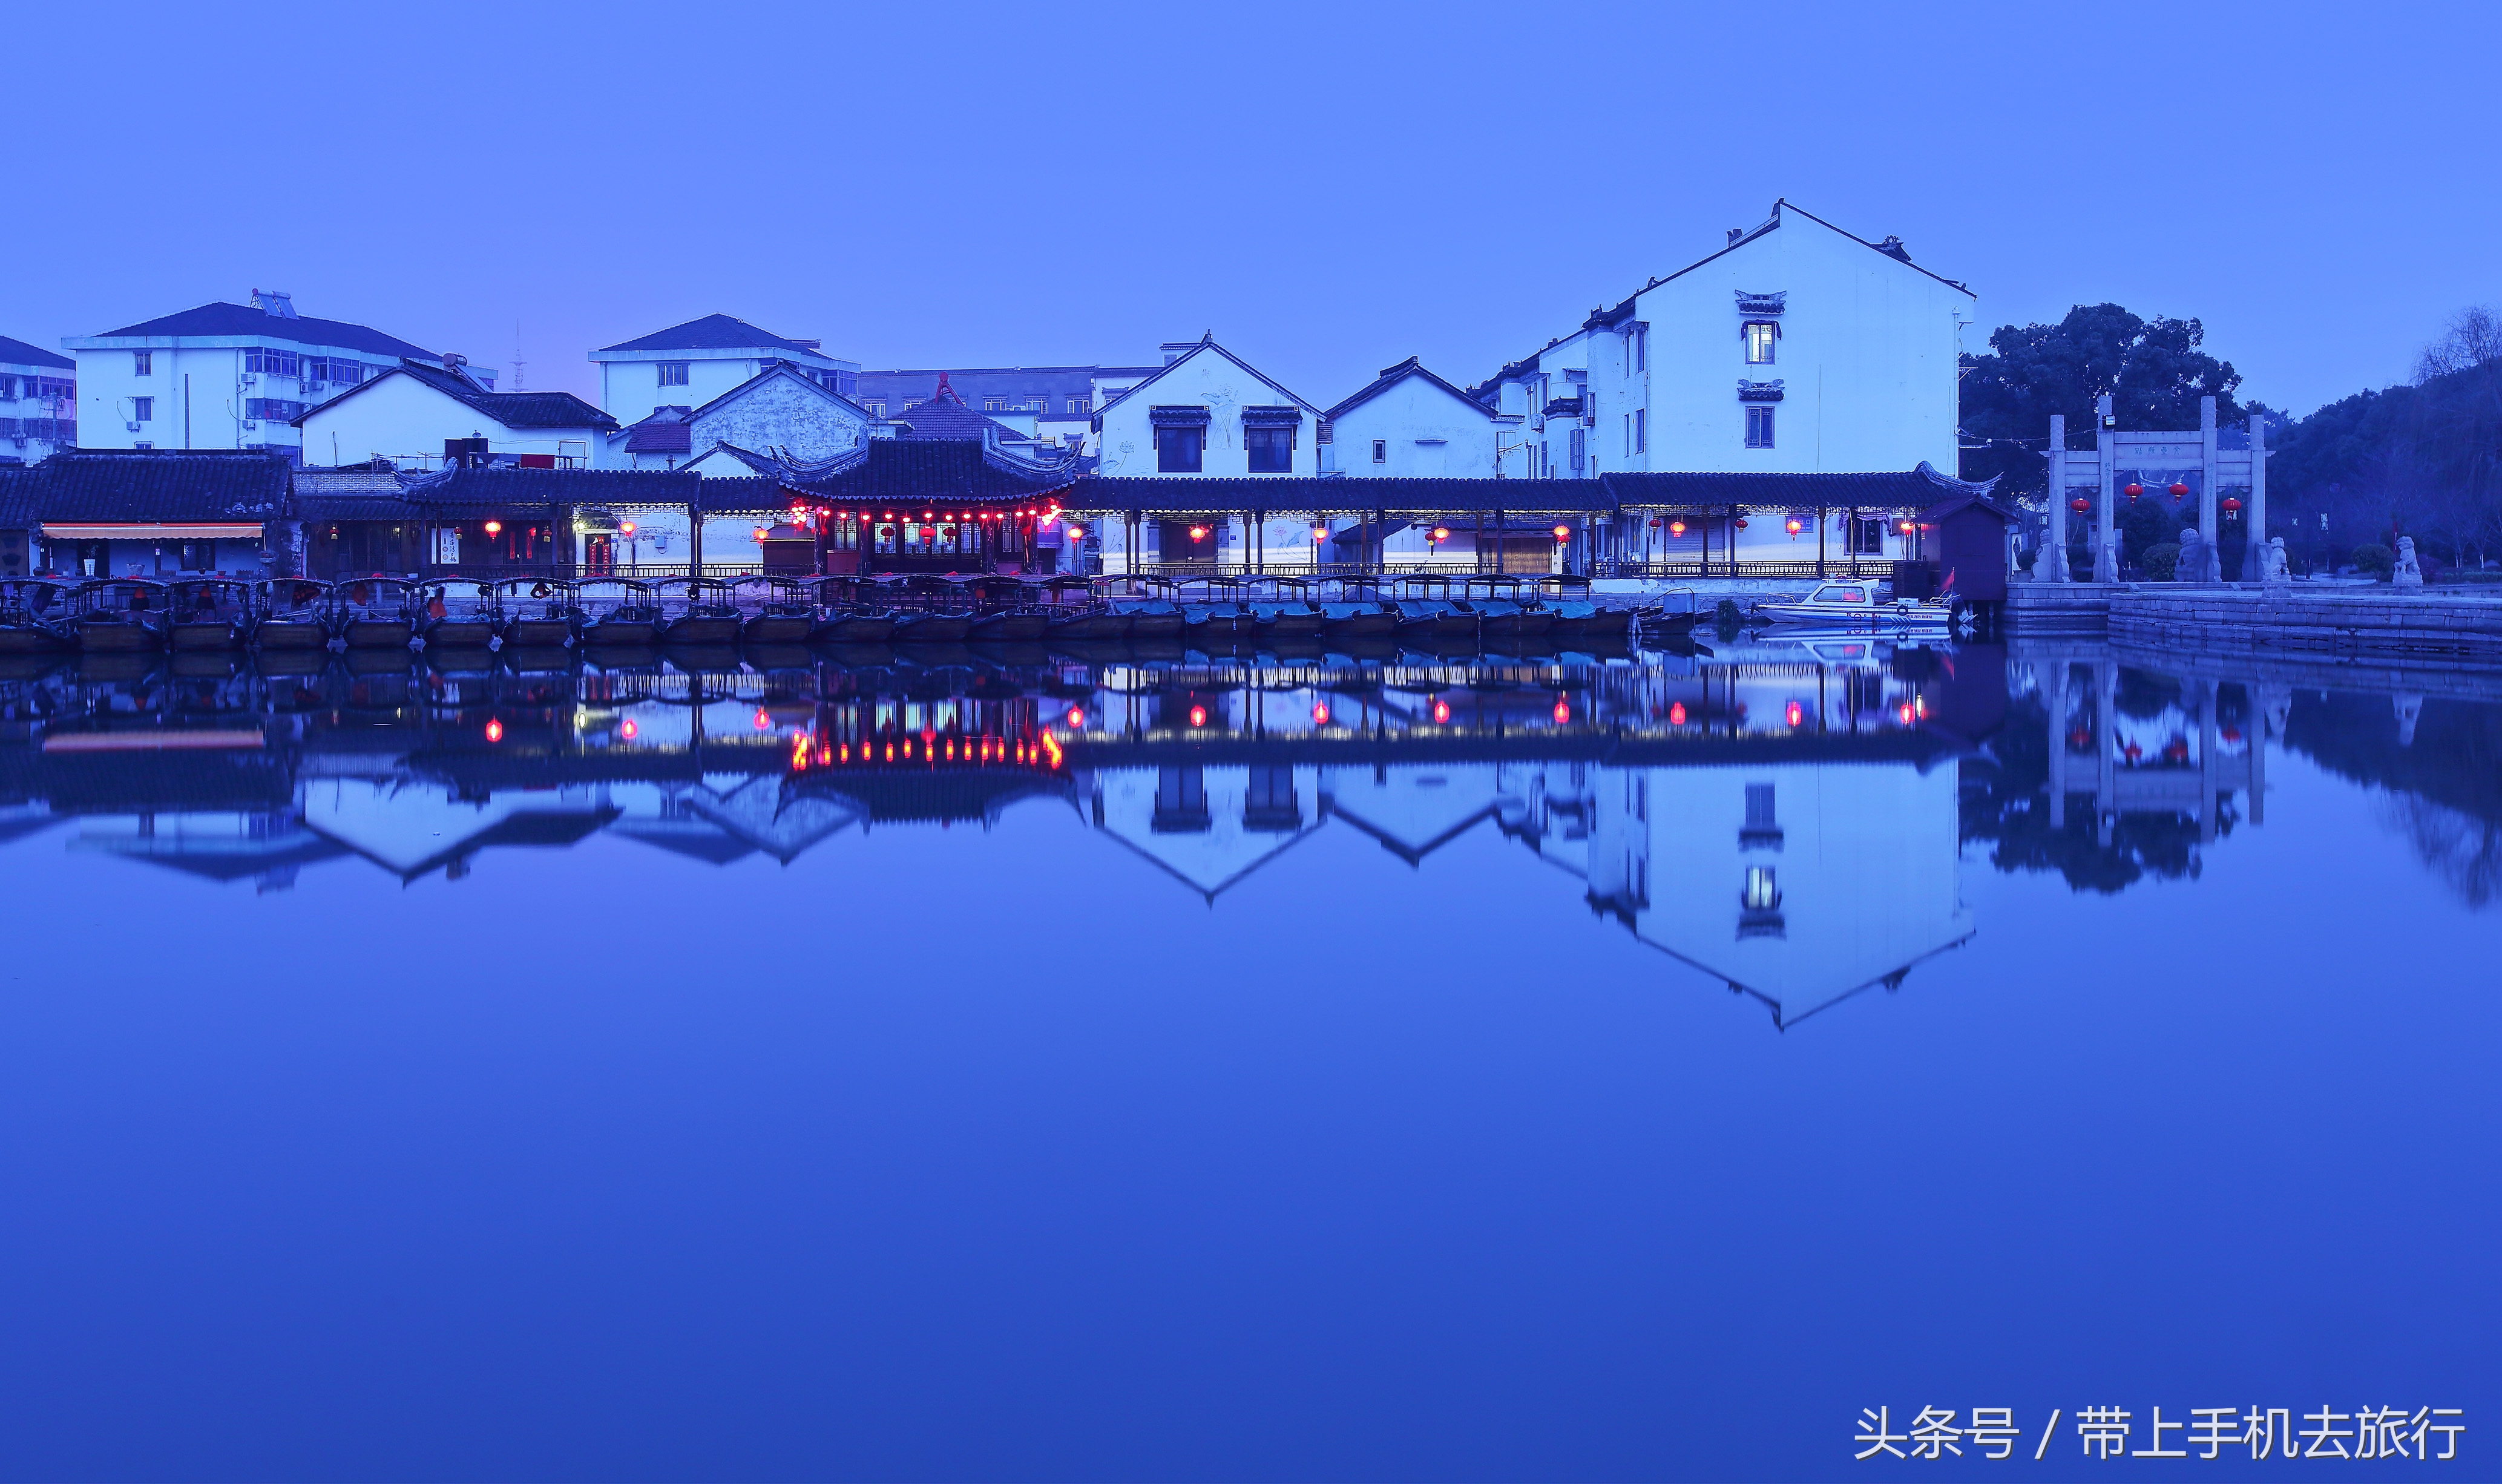 《水乡夜色》,拍摄于江苏省苏州市昆山市锦溪古镇,摄影:周正森,图文源